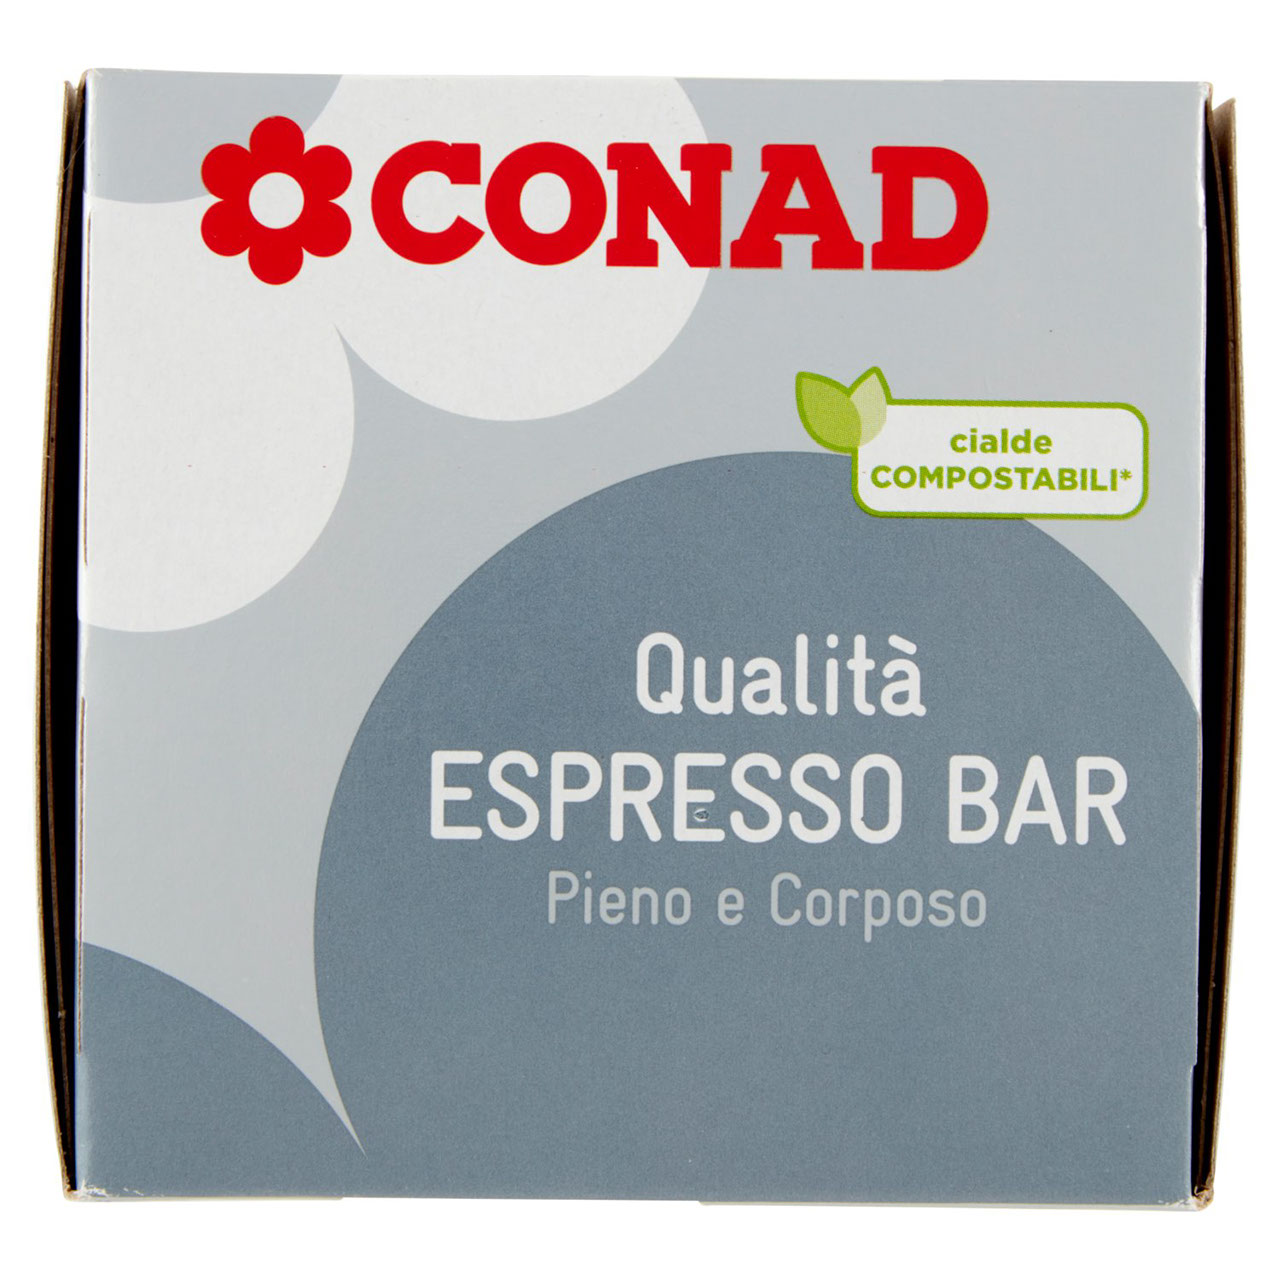 Cialde per Macchine Espresso 125 g Conad